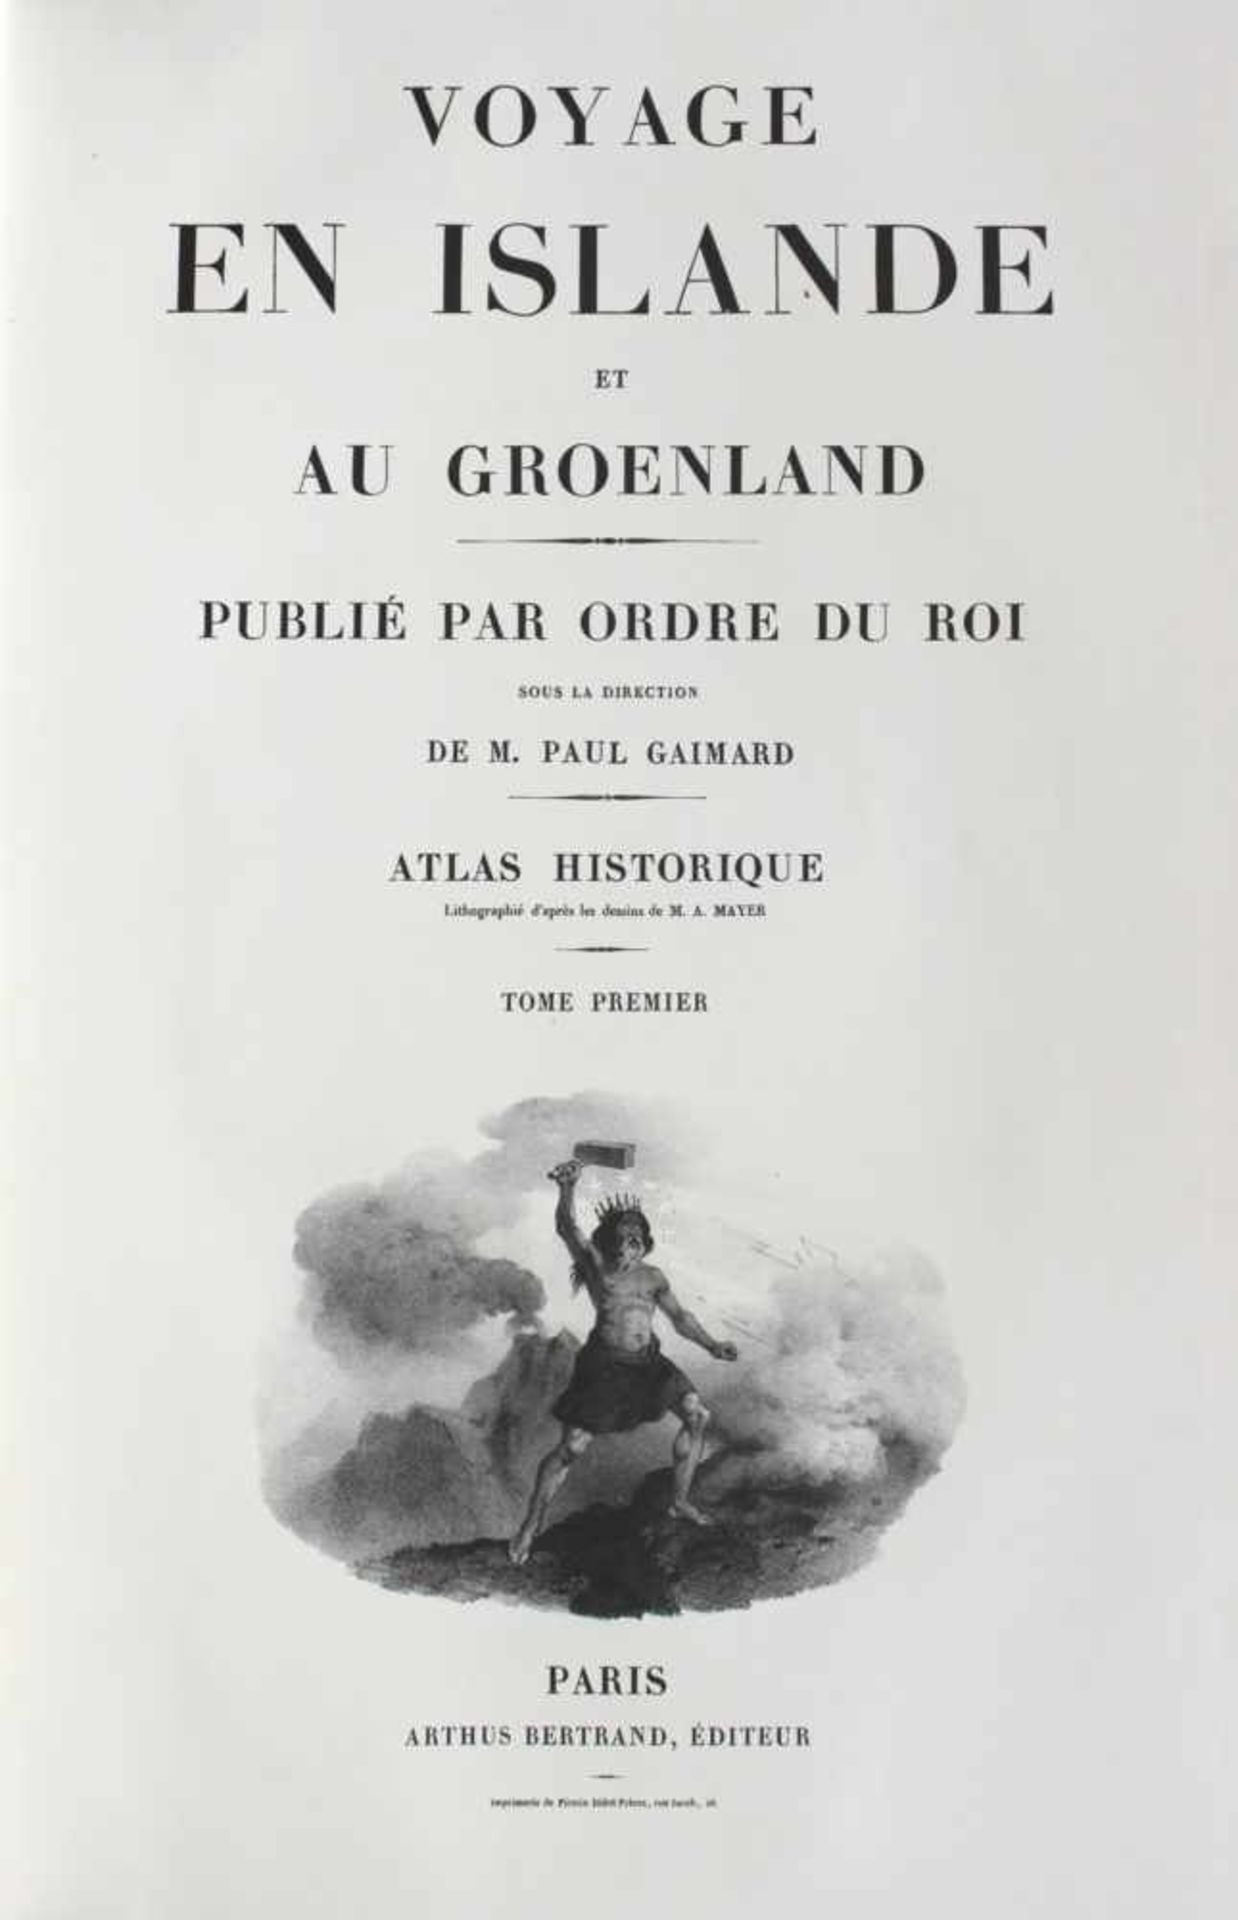 Atlas. Gaimard, Paul.Voyage en Islande et au Groenland. Publié par ordre du Roi sous la direction de